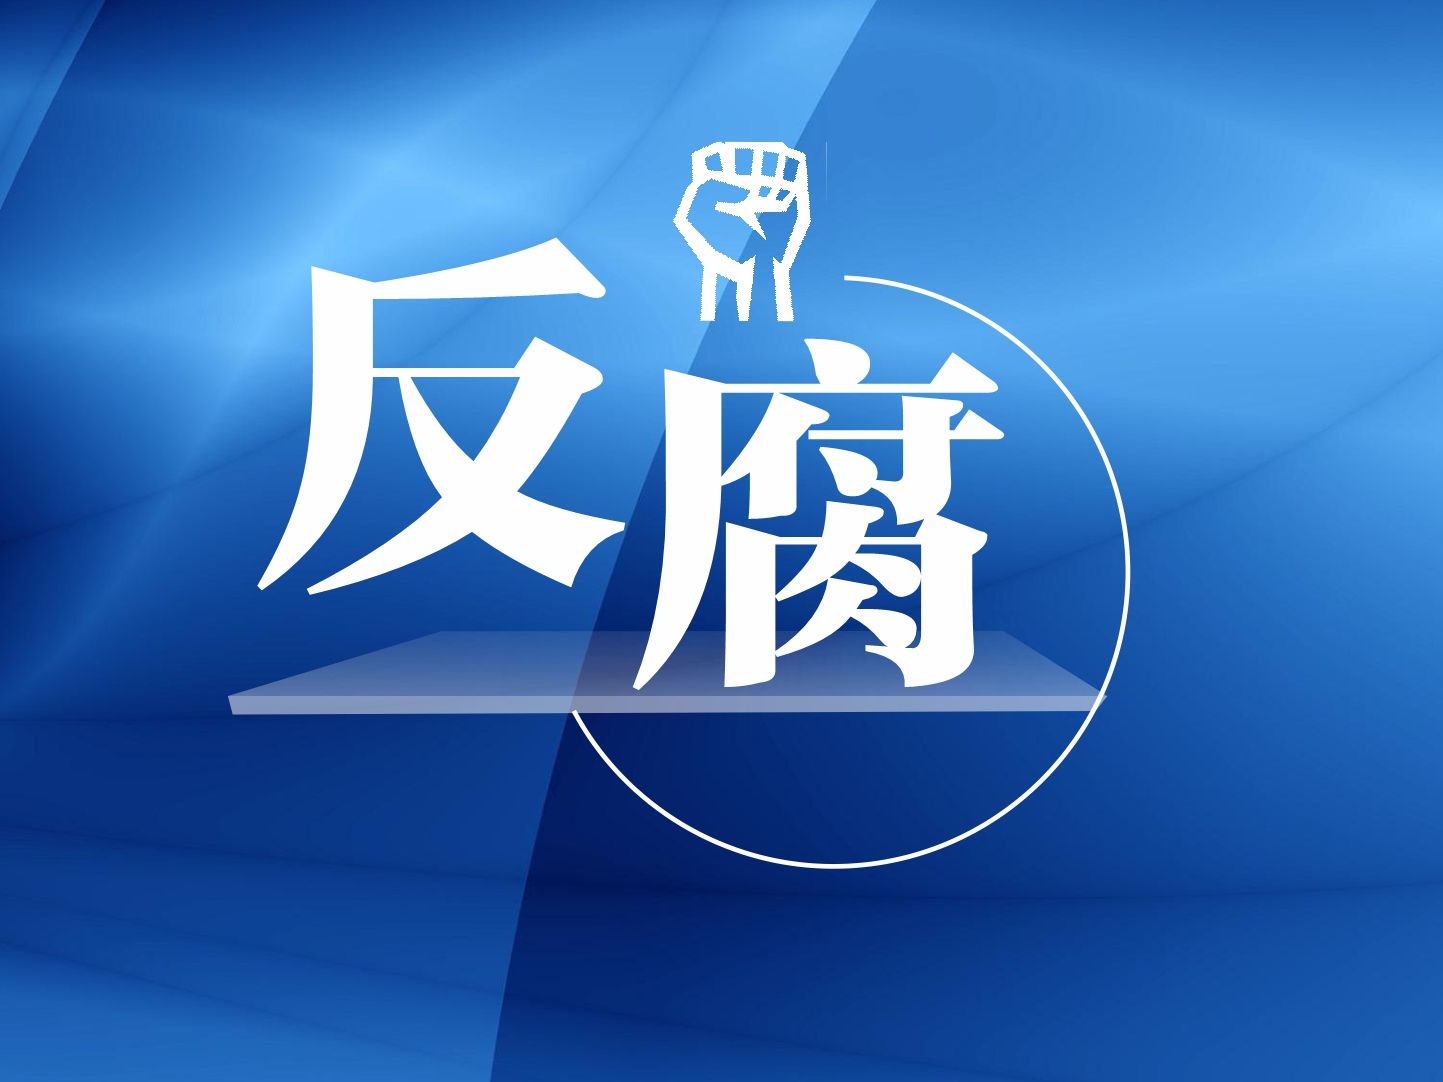 潮州市副市长、市公安局局长钟明接受纪律审查和监察调查